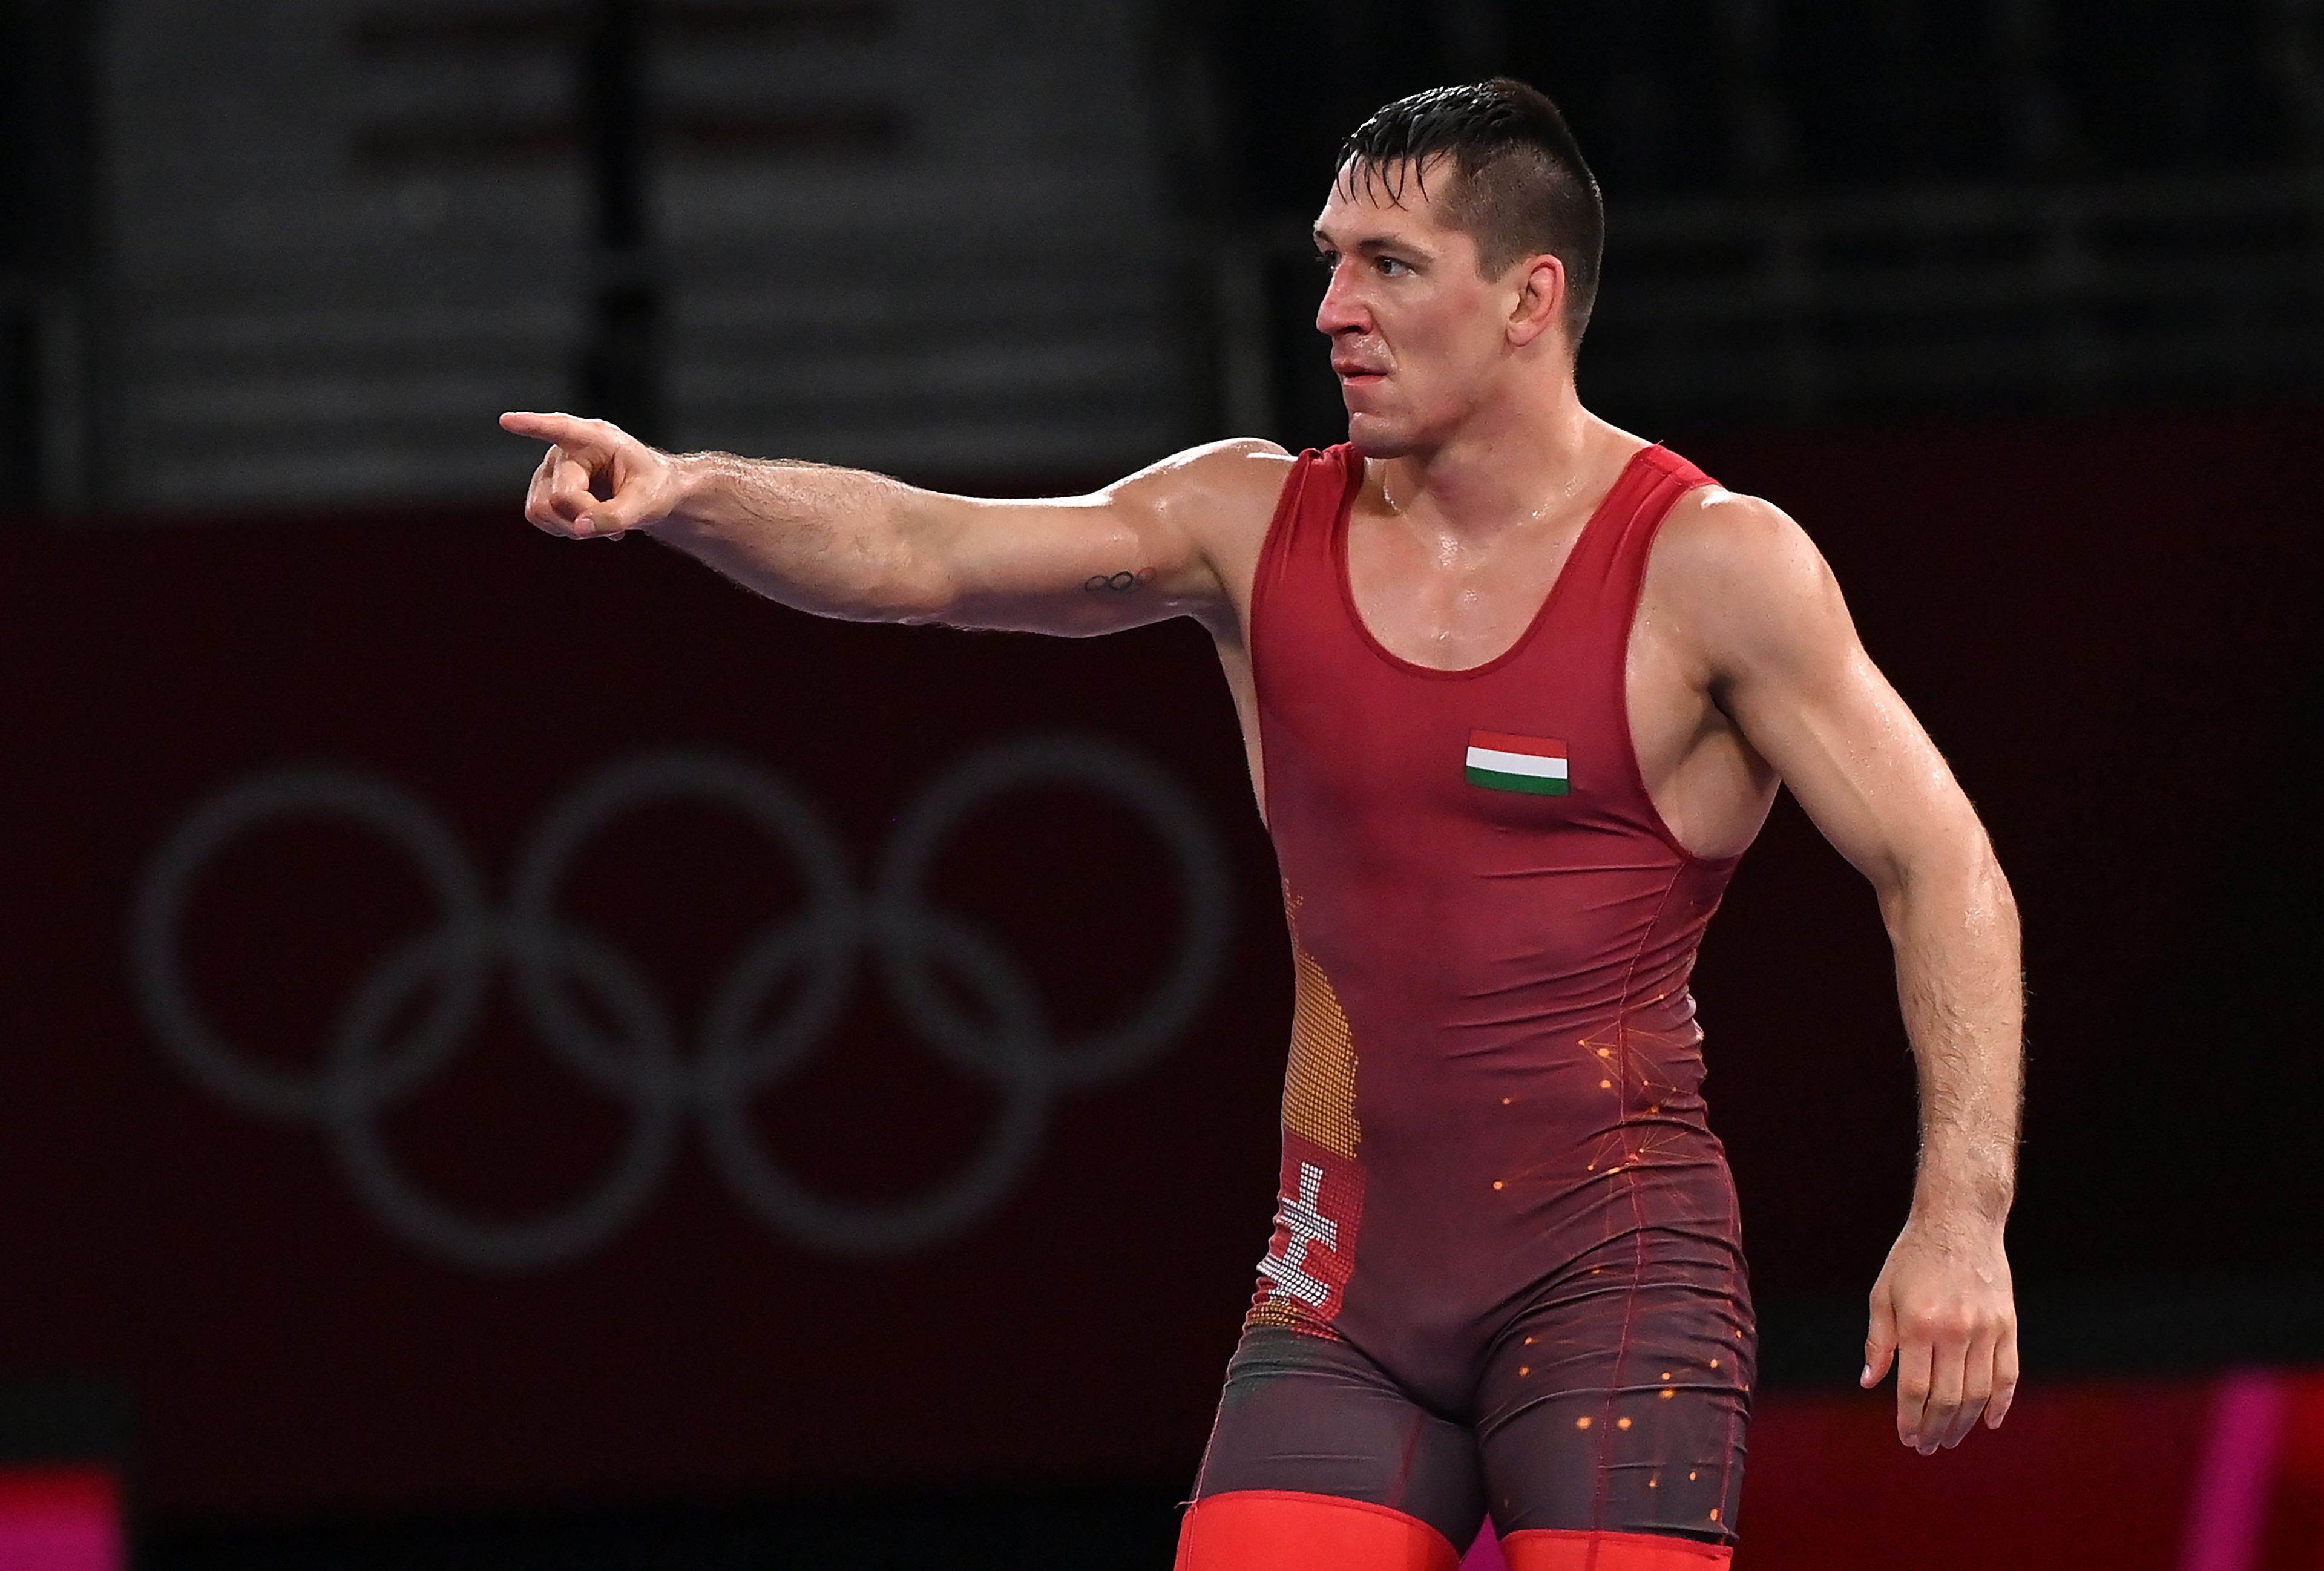 Lőrincz Viktor elveszítette az olimpiai döntőt. / Fotó: MTI/Illyés Tibor